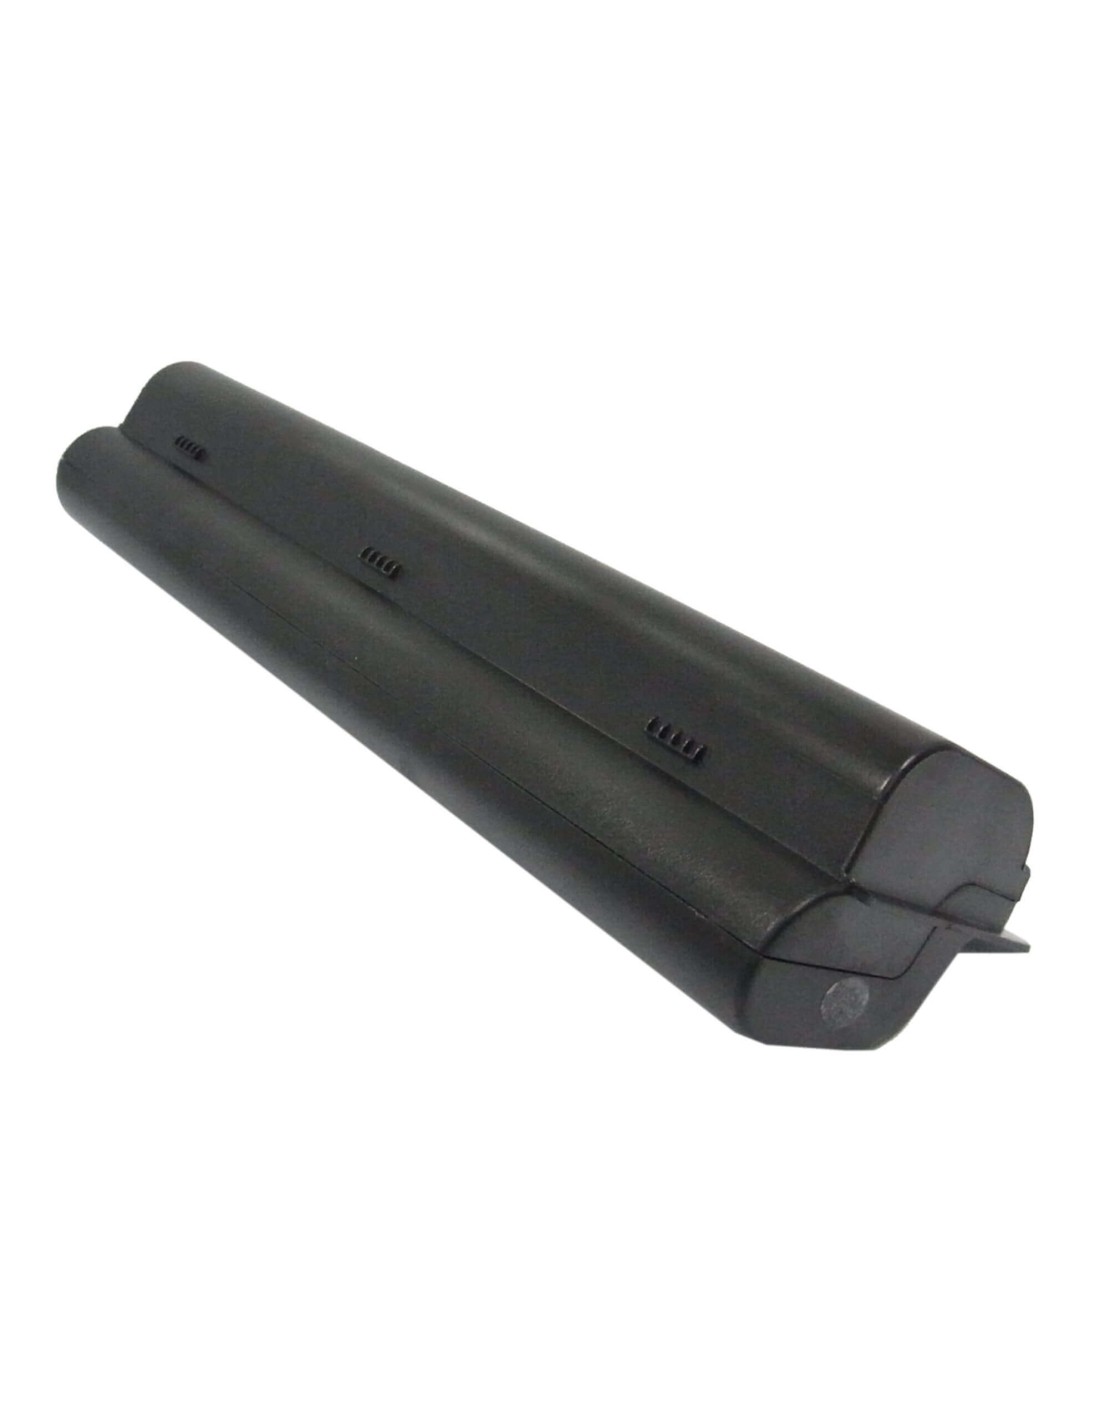 Black Battery for HP G6000, G7000, Pavilion dv2000 10.8V, 6600mAh - 71.28Wh